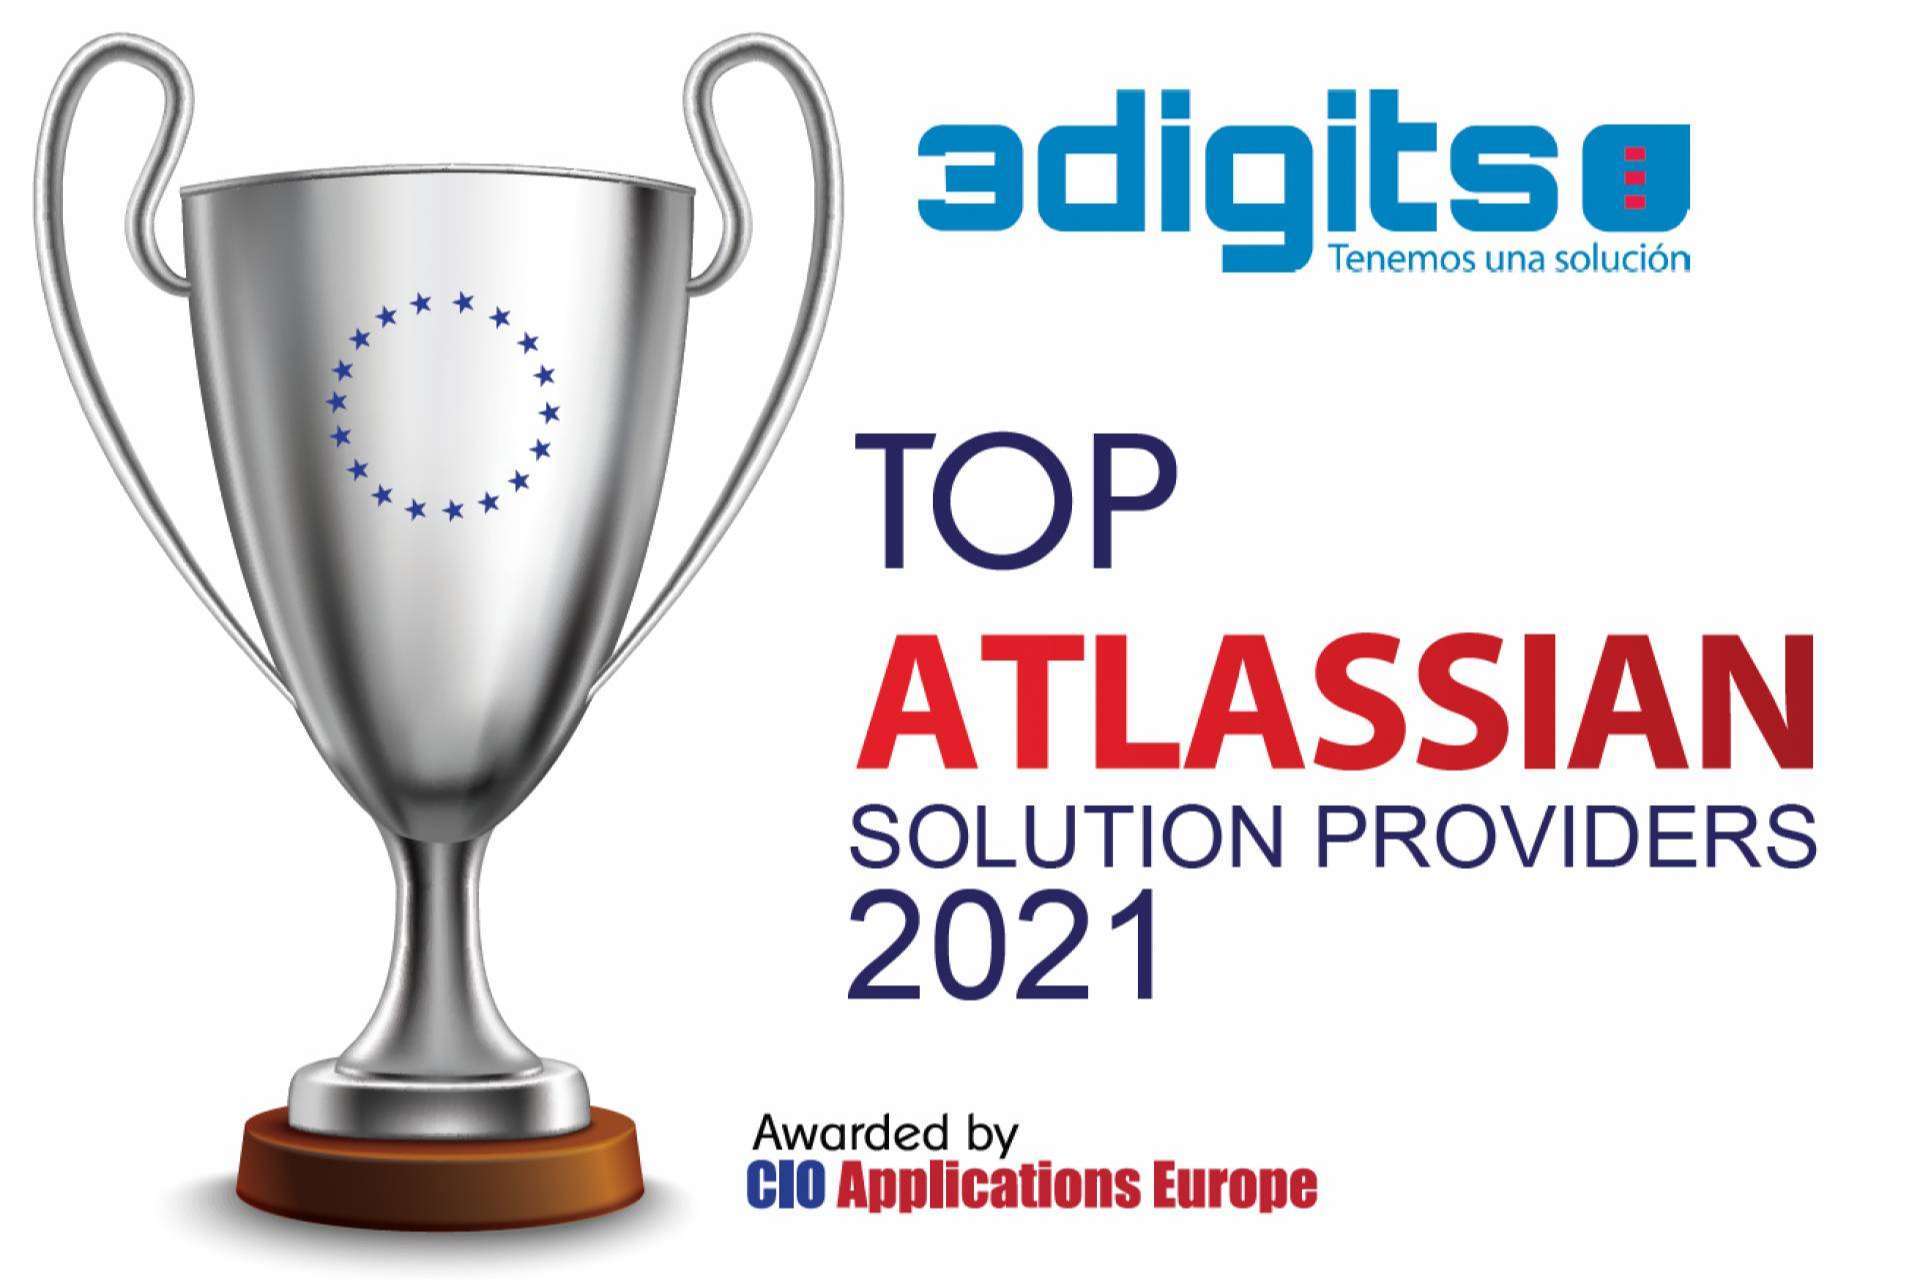 3digits destaca como uno de los Top 10 Atlassian Solution Providers 2021